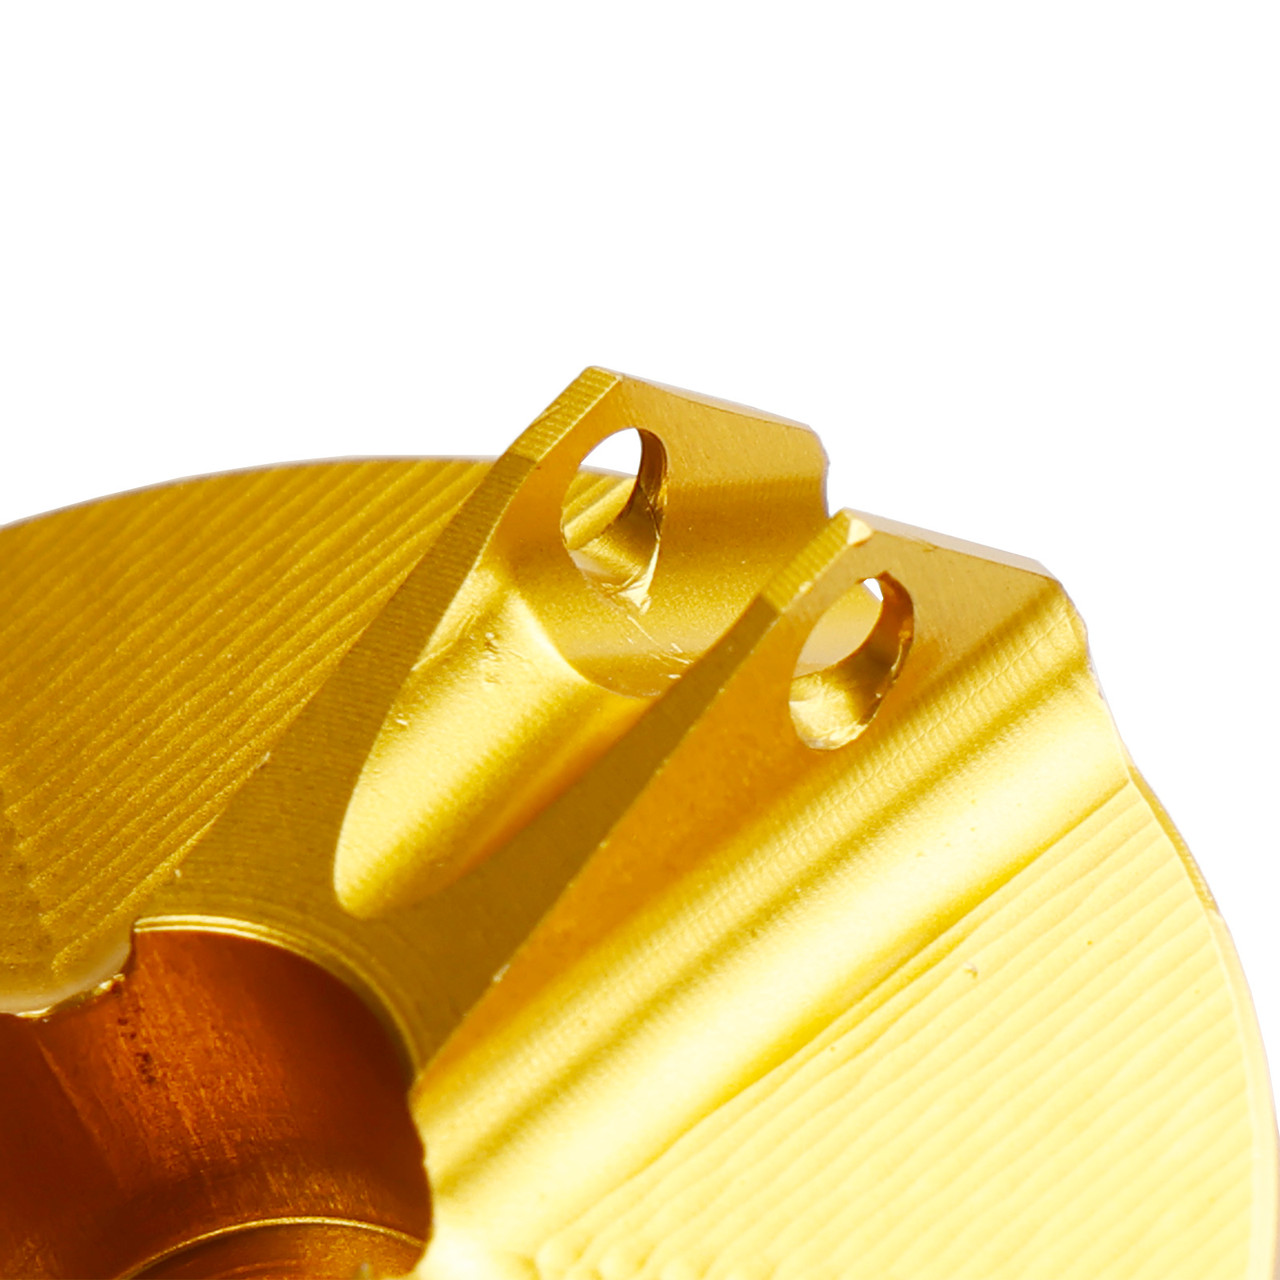 Billet Oil Filler Cap Gold For Yamaha MT-03 MT03 MT-07 MT07 MT-10 / SP MT-25